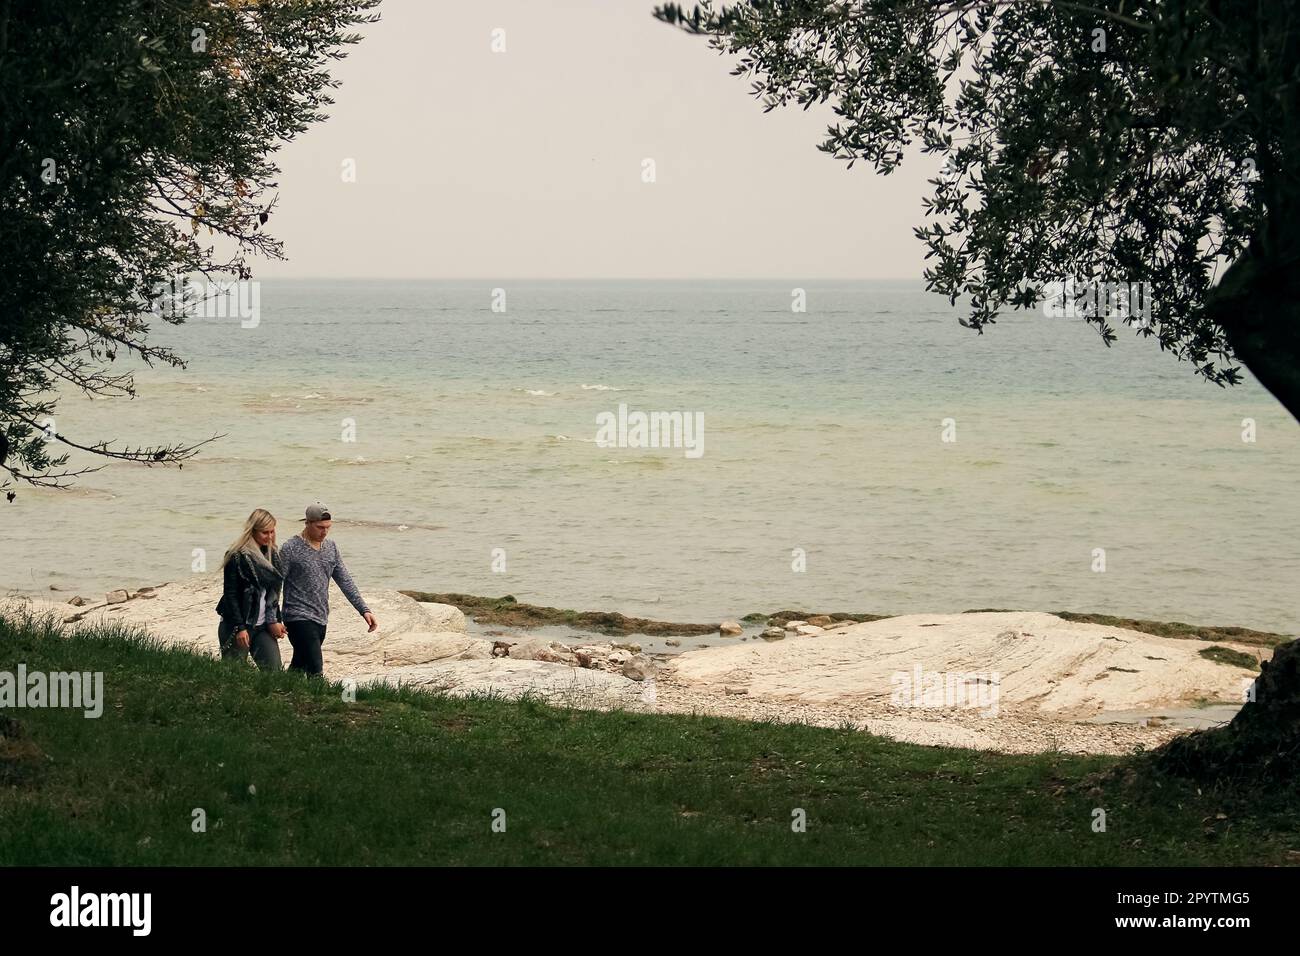 Ein junges, traditionelles Paar, ein weißer Mann und eine weiße Frau, verliebt und Händchen haltend, wandern am Ufer eines großen Sees entlang, ohne Angst vor Regen. Stockfoto